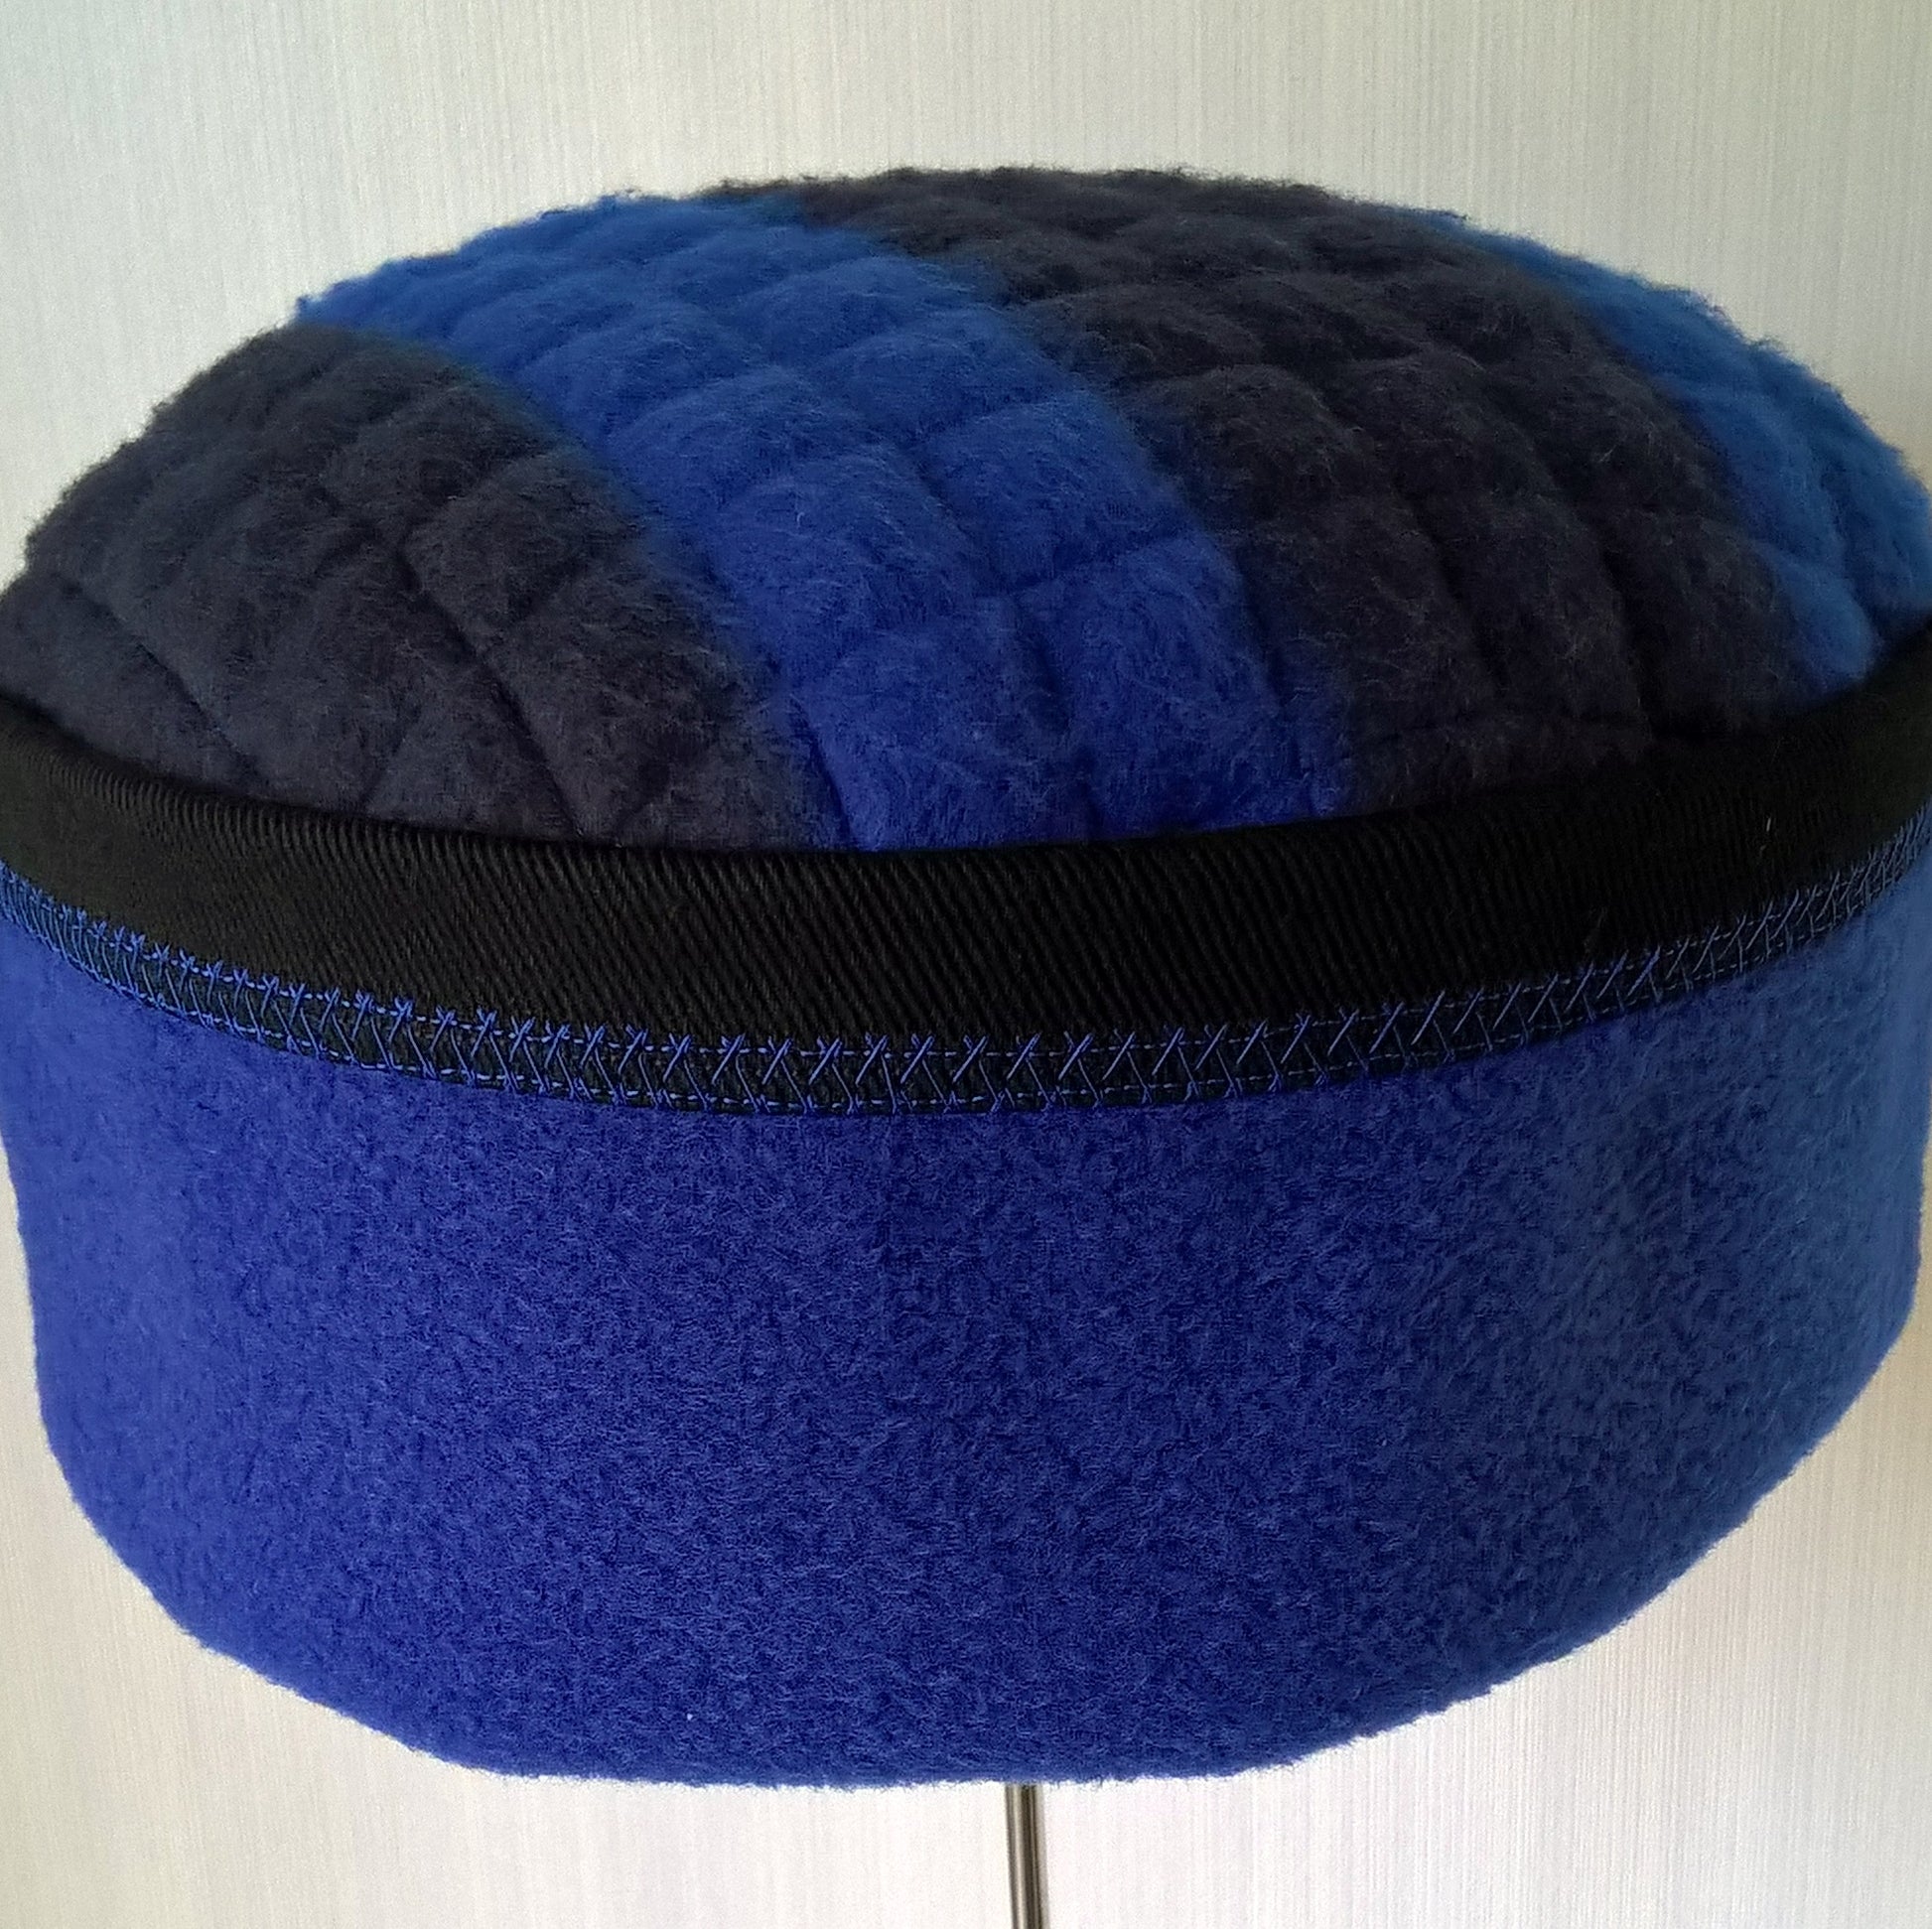 Fleece hat has cobalt blue stitch detail around edge of crown